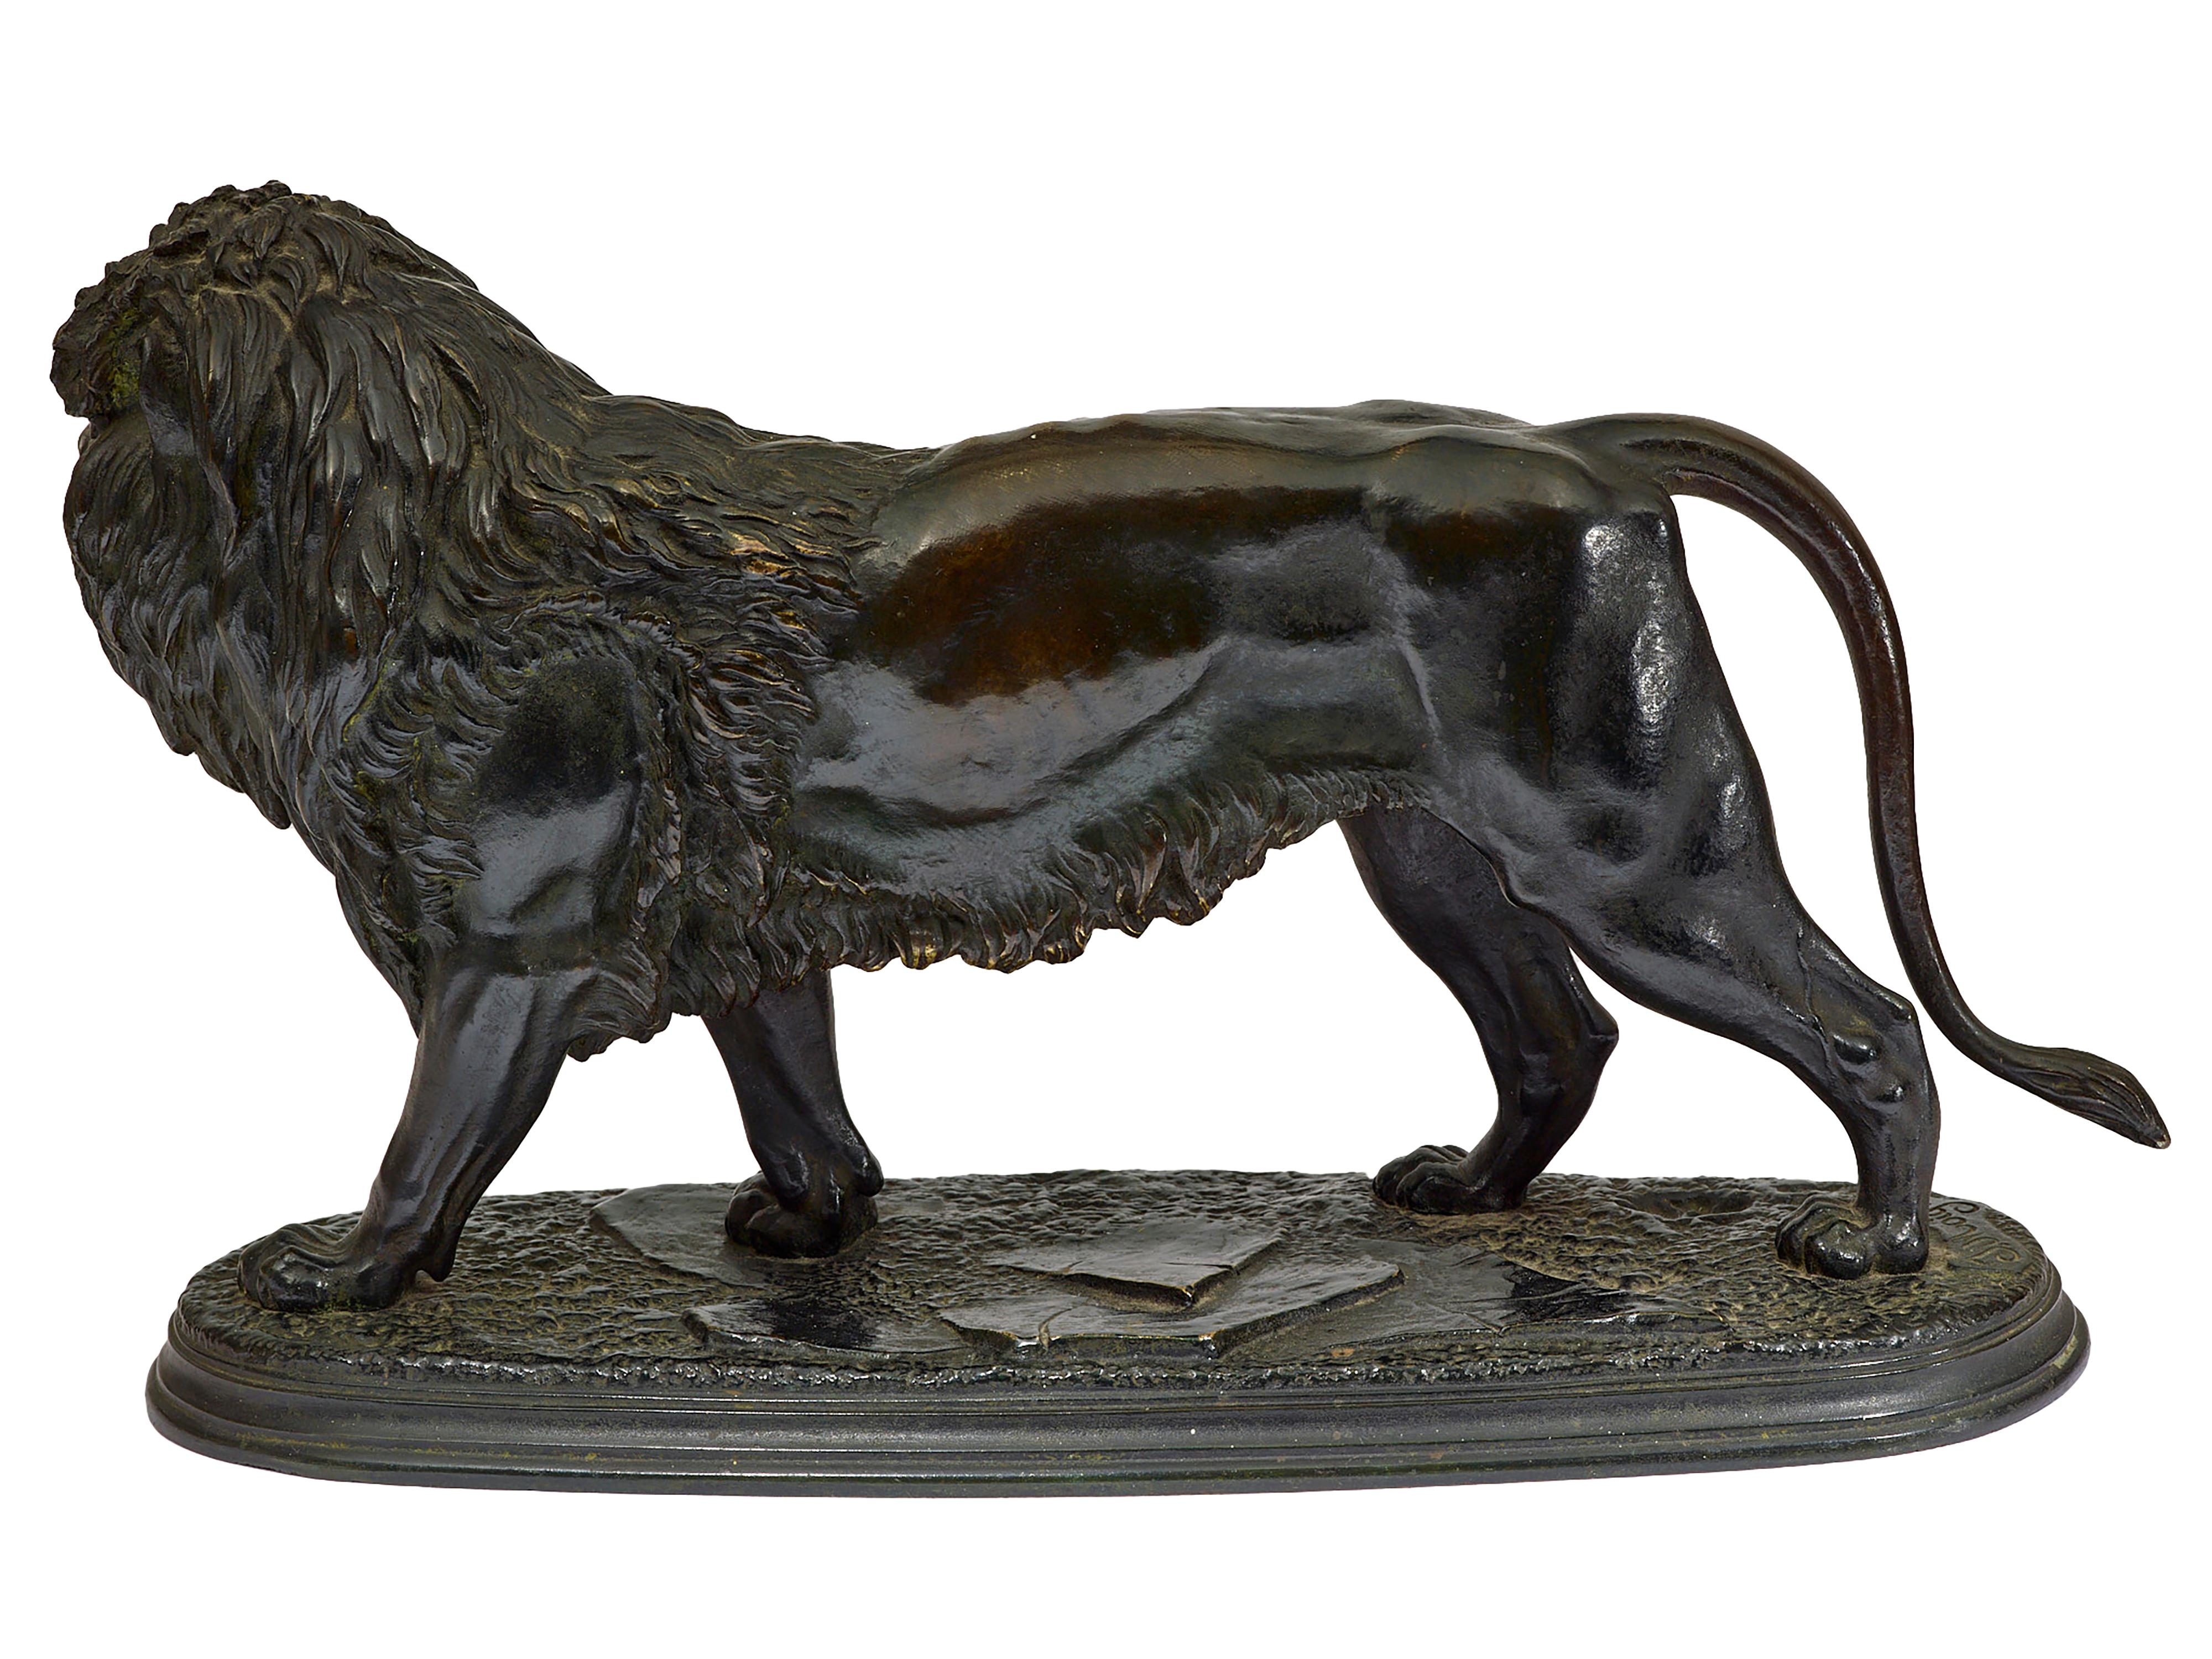 Bronze-Skulptur eines Löwen
Originaler Bronzeguss eines Löwen mit der Aufschrift 